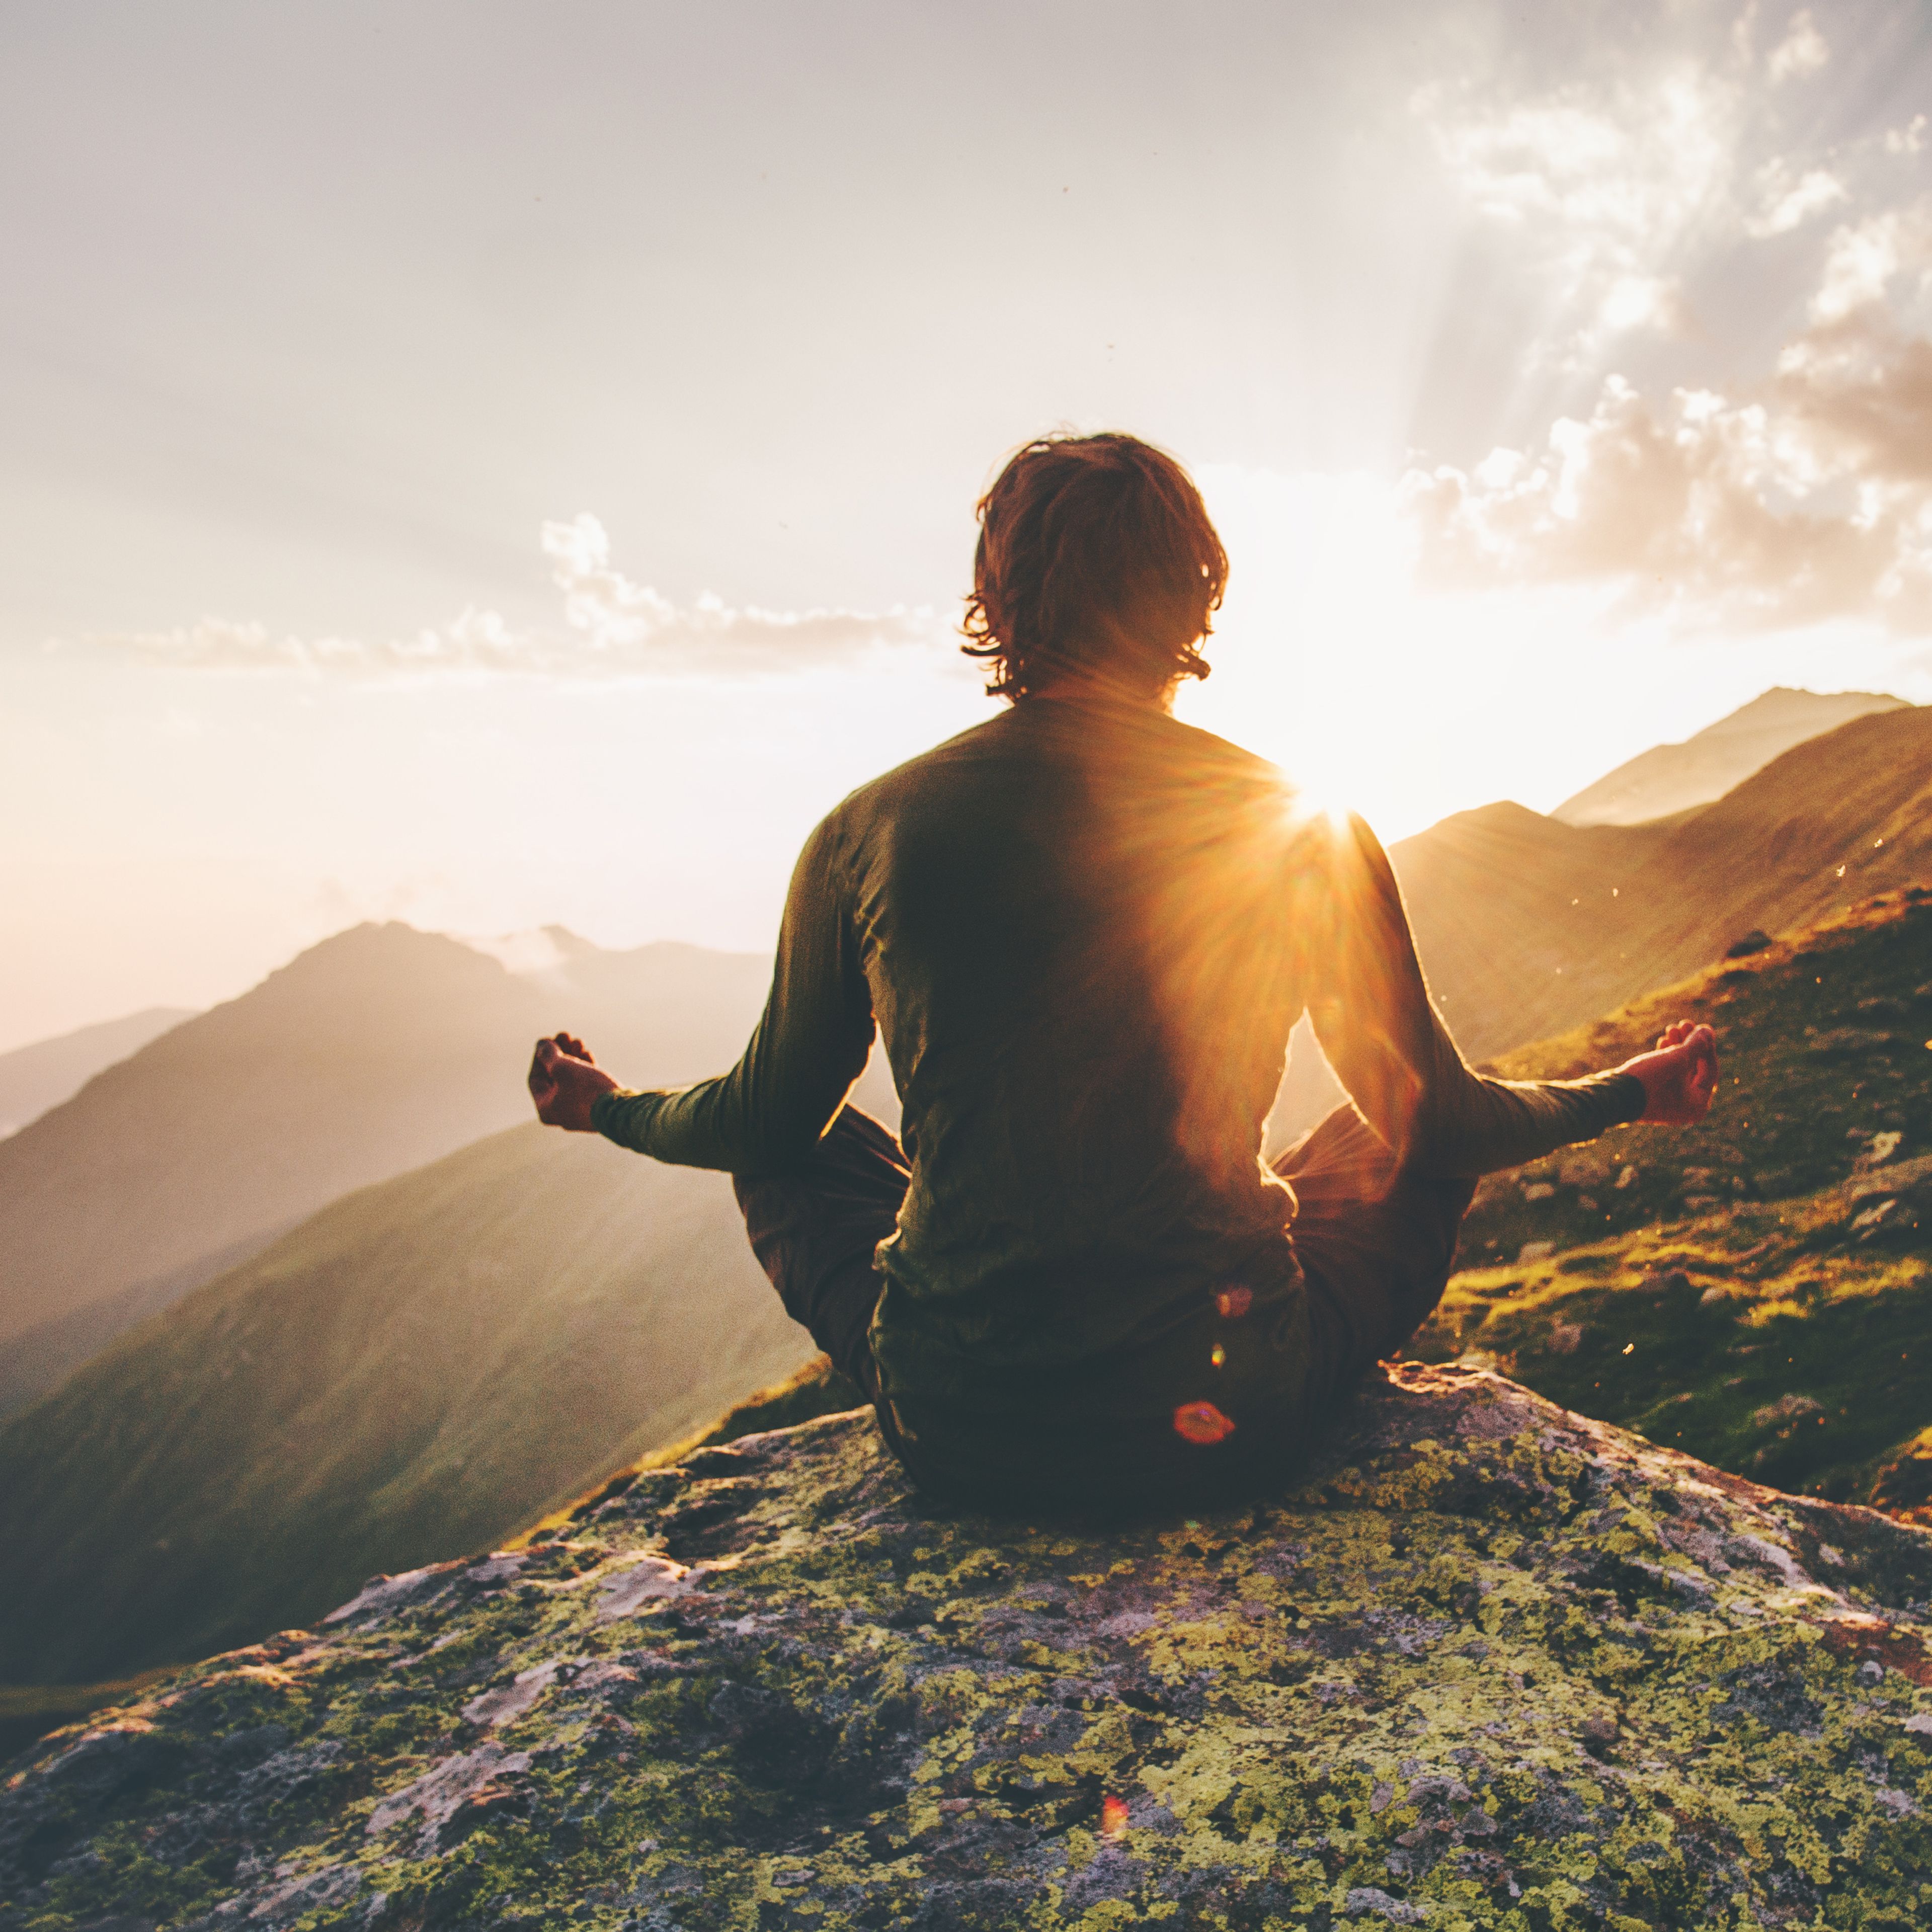 Mann meditiert auf Berggipfel im Sonnenlicht